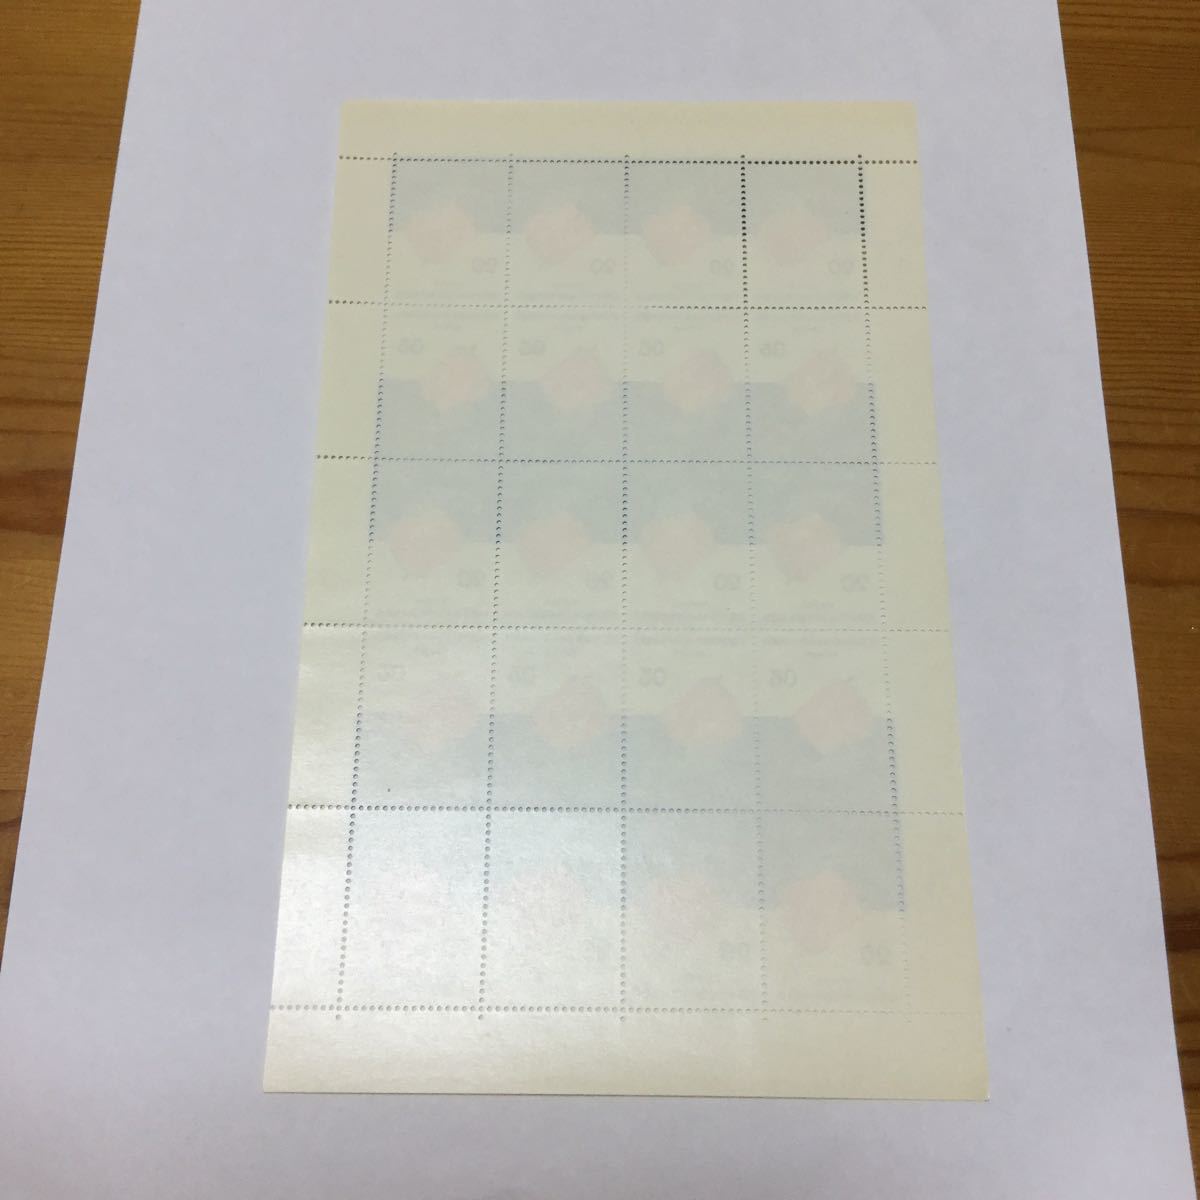 【未使用】札幌オリンピック冬季大会記念 ボブスレー 切手 1972年 20円×20枚 記念切手 大蔵省印刷局製造 切手シートの画像5